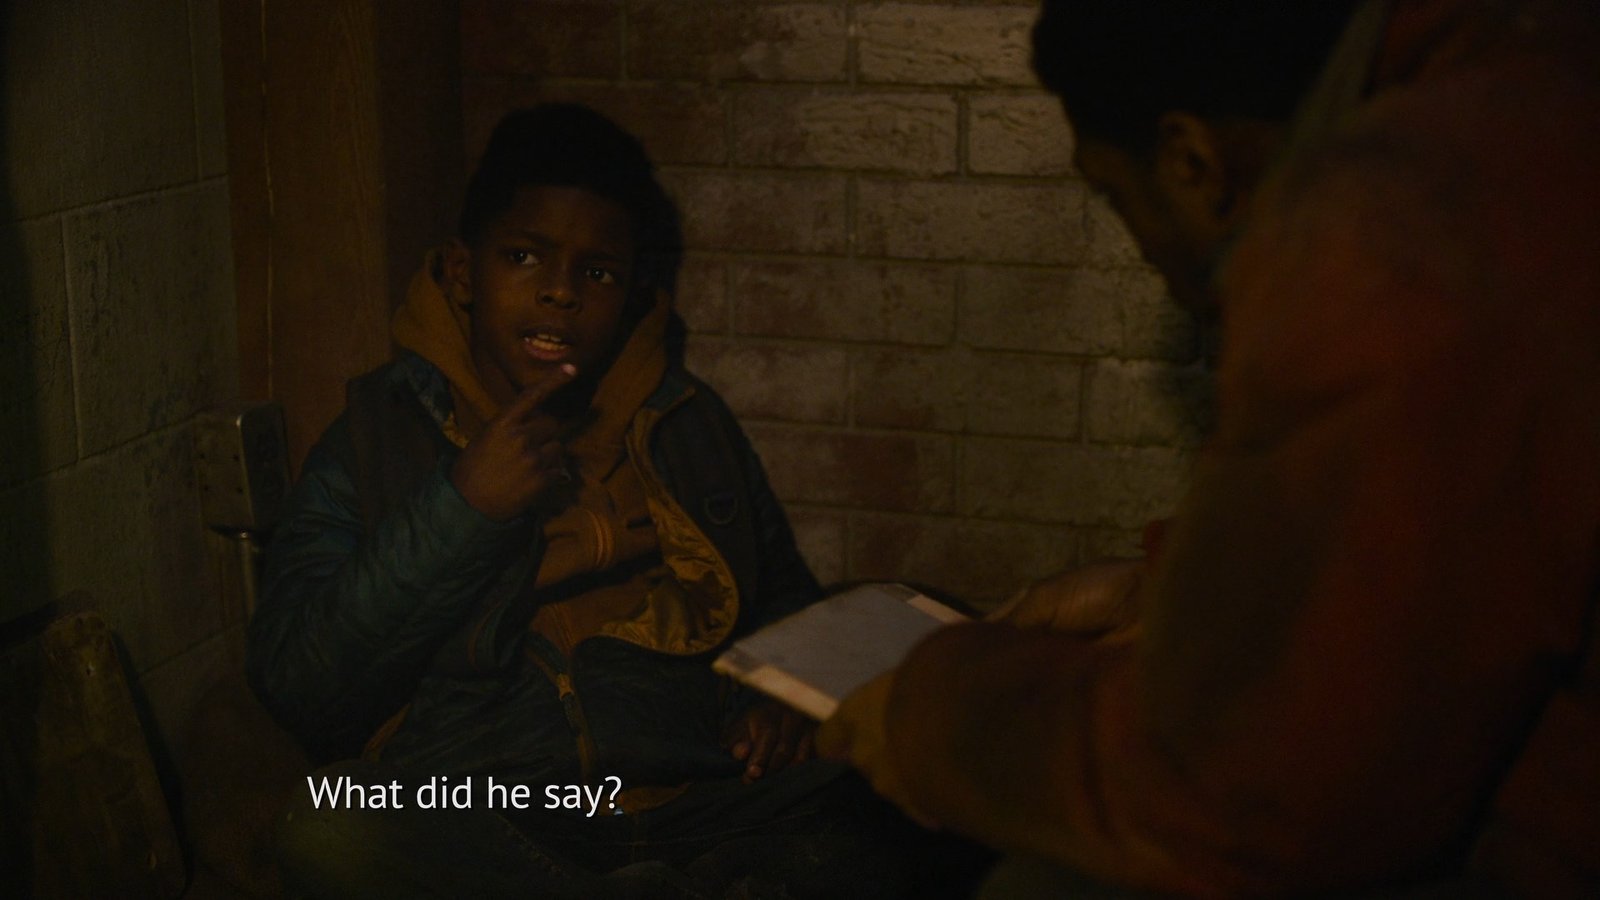 The Last of Us: Quem são os garotos no final do episódio 4